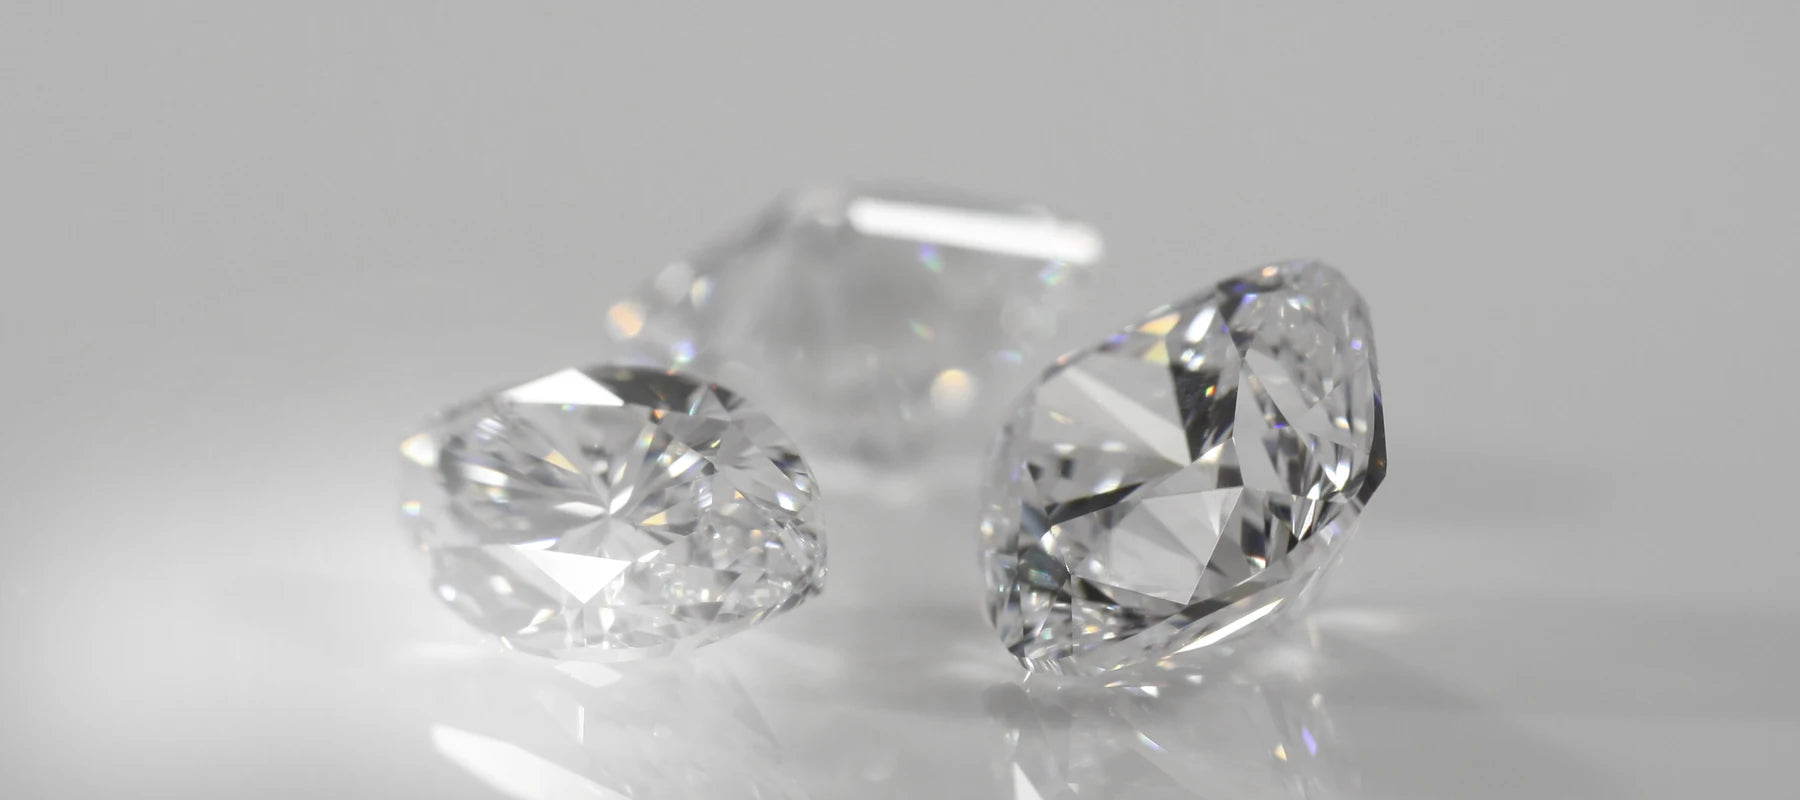 2 carat lab made grown manufacturered diamonds at Quorri Canada